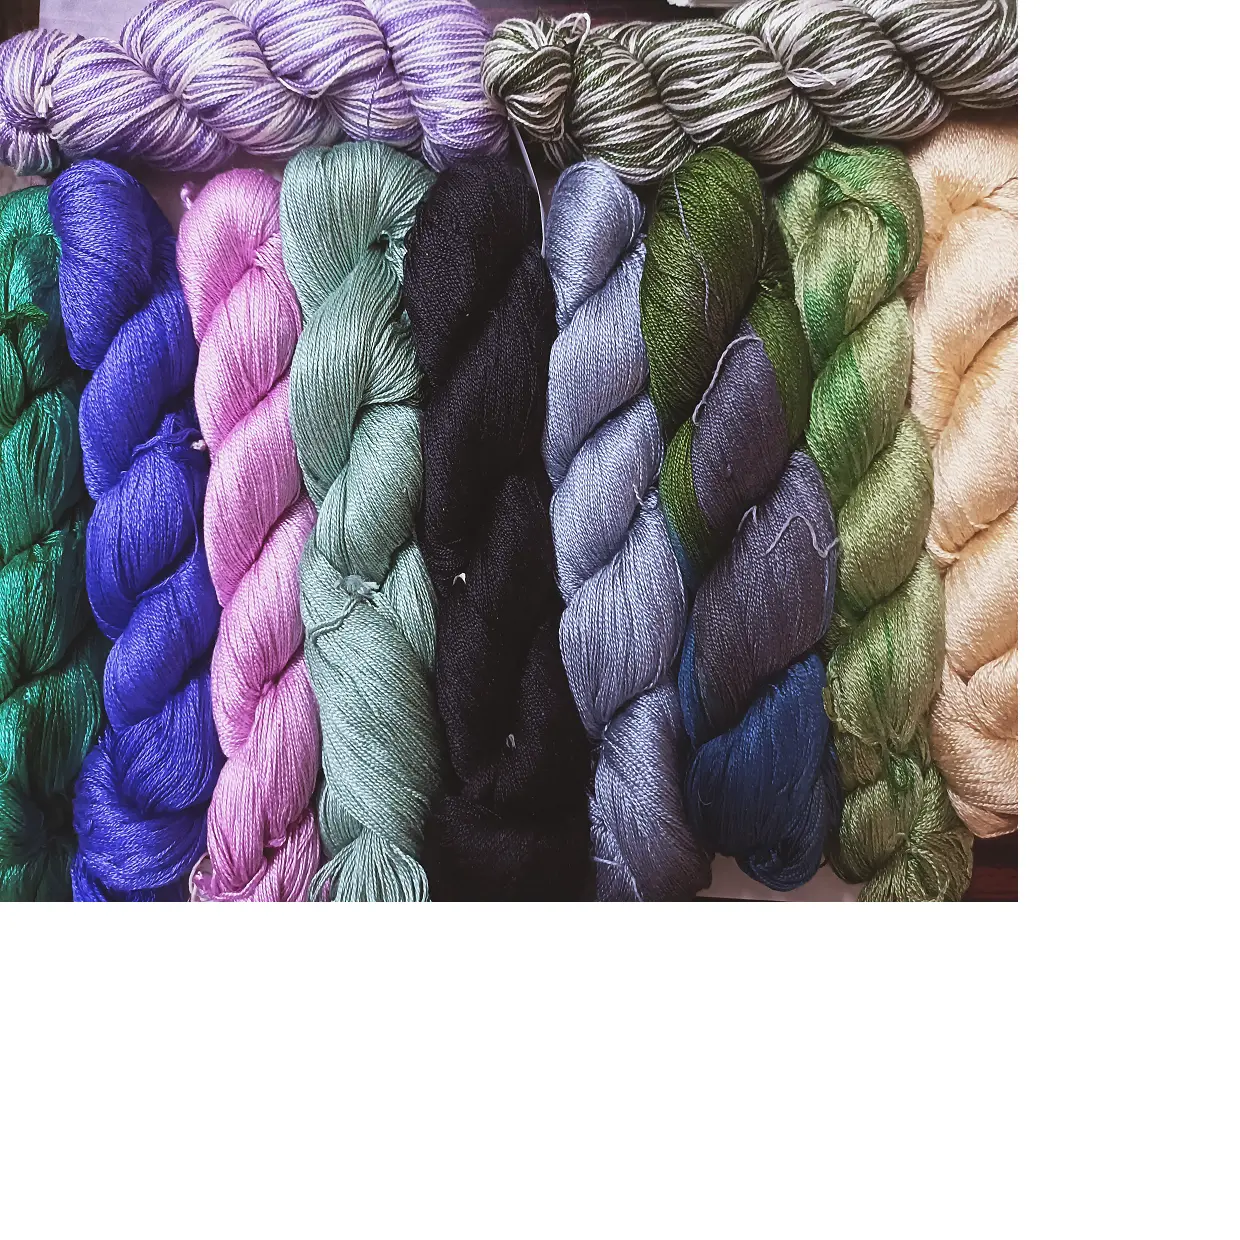 Özel yapılmış dut ipek iplik sayısı 20/2 NM mevcut özel boyalı renkler için uygun weavers ve muga ipek